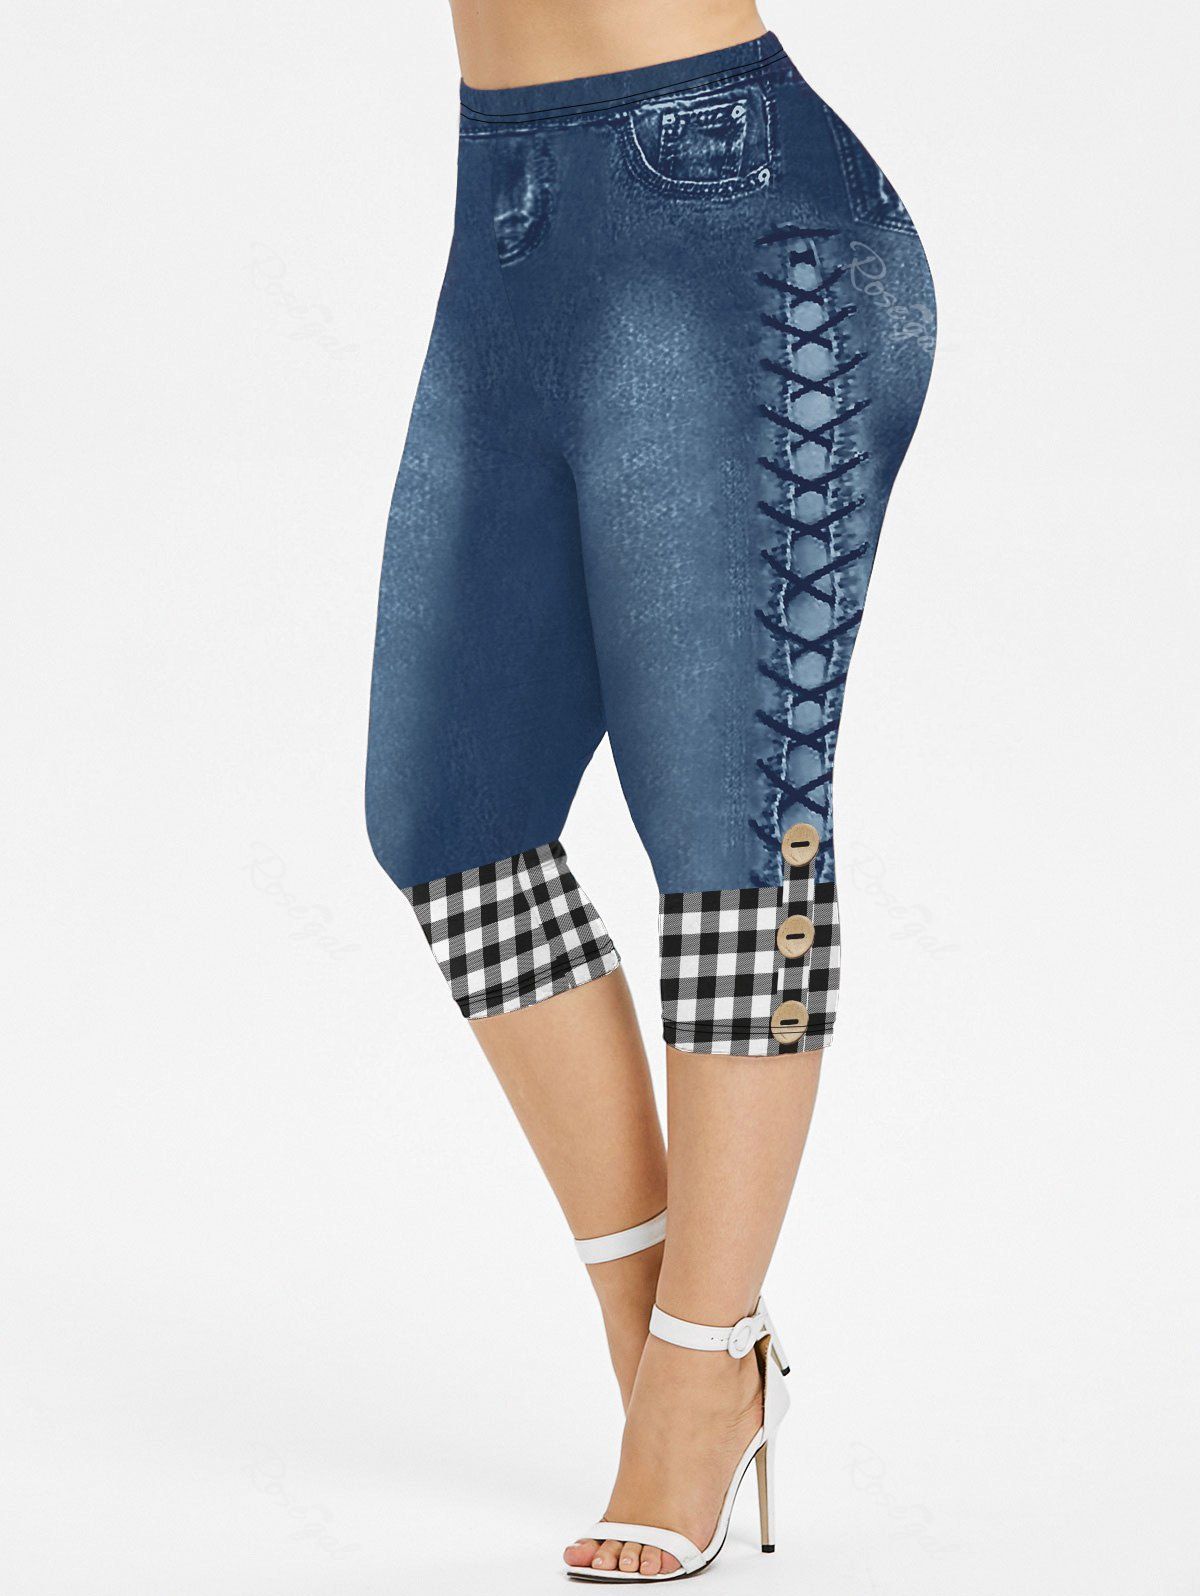 Store Plus Size 3D Plaid Buttons Lace-up Jeans Printed Capri Jeggings  